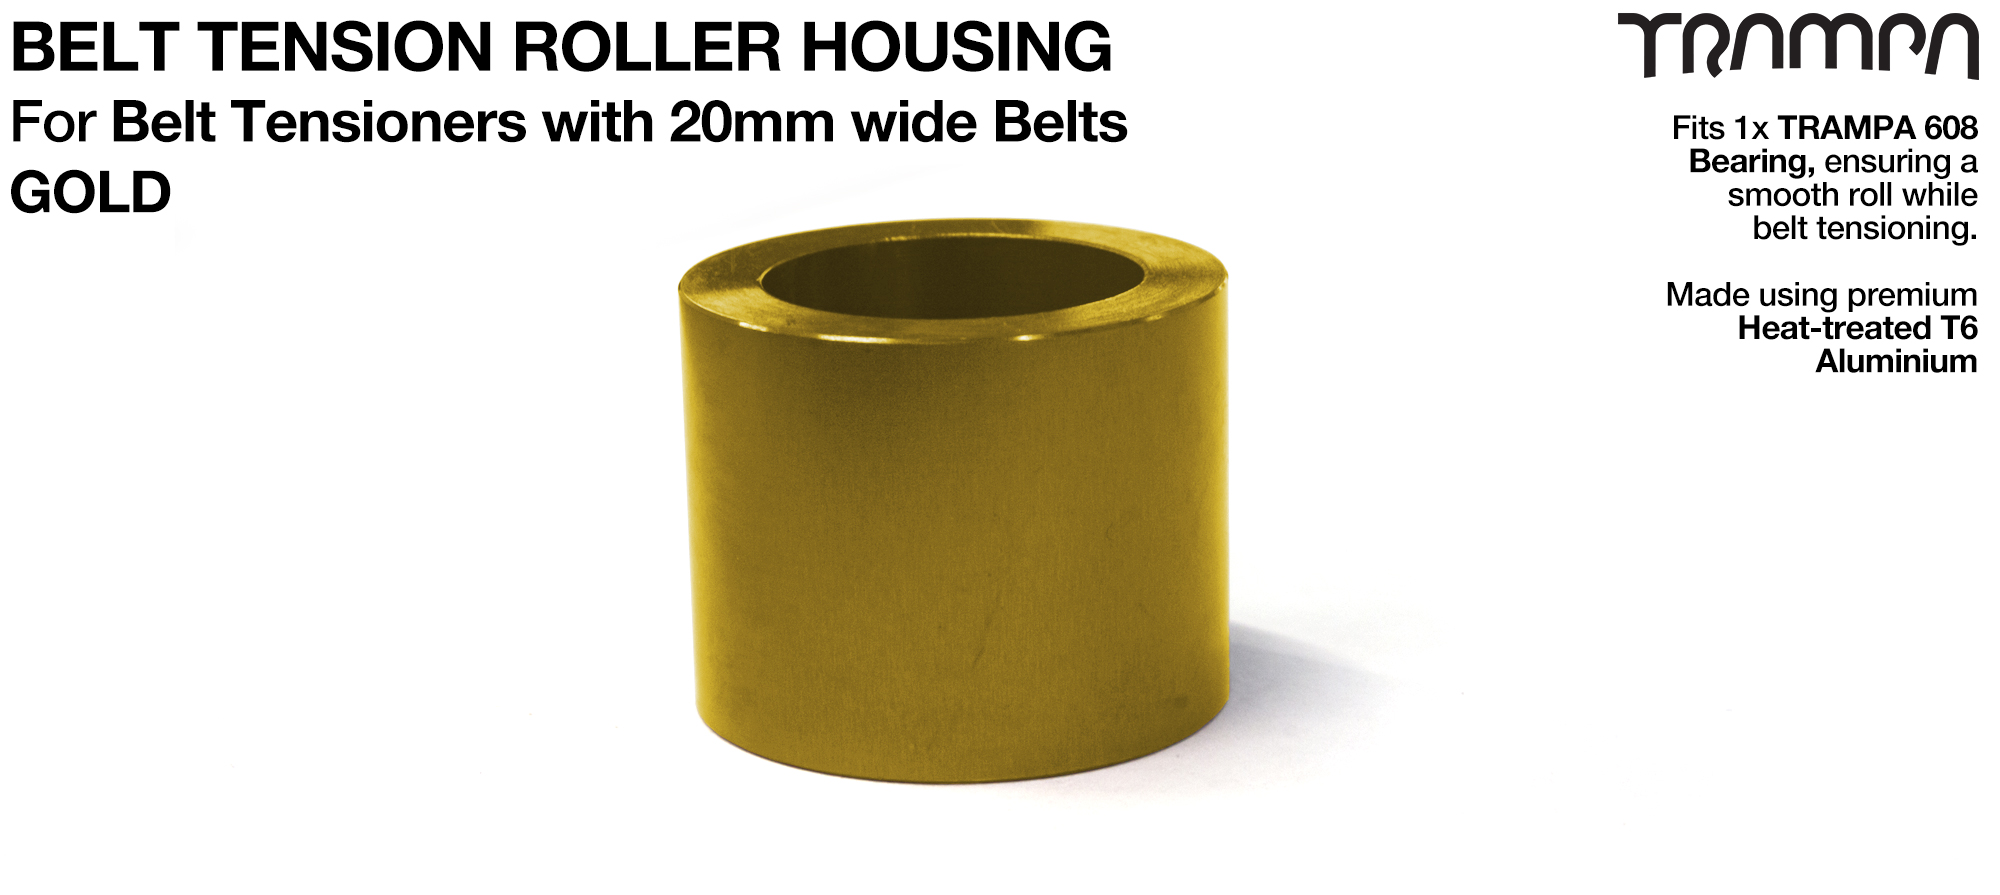 Belt Tension Roller Housing for 20mm Belts - GOLD